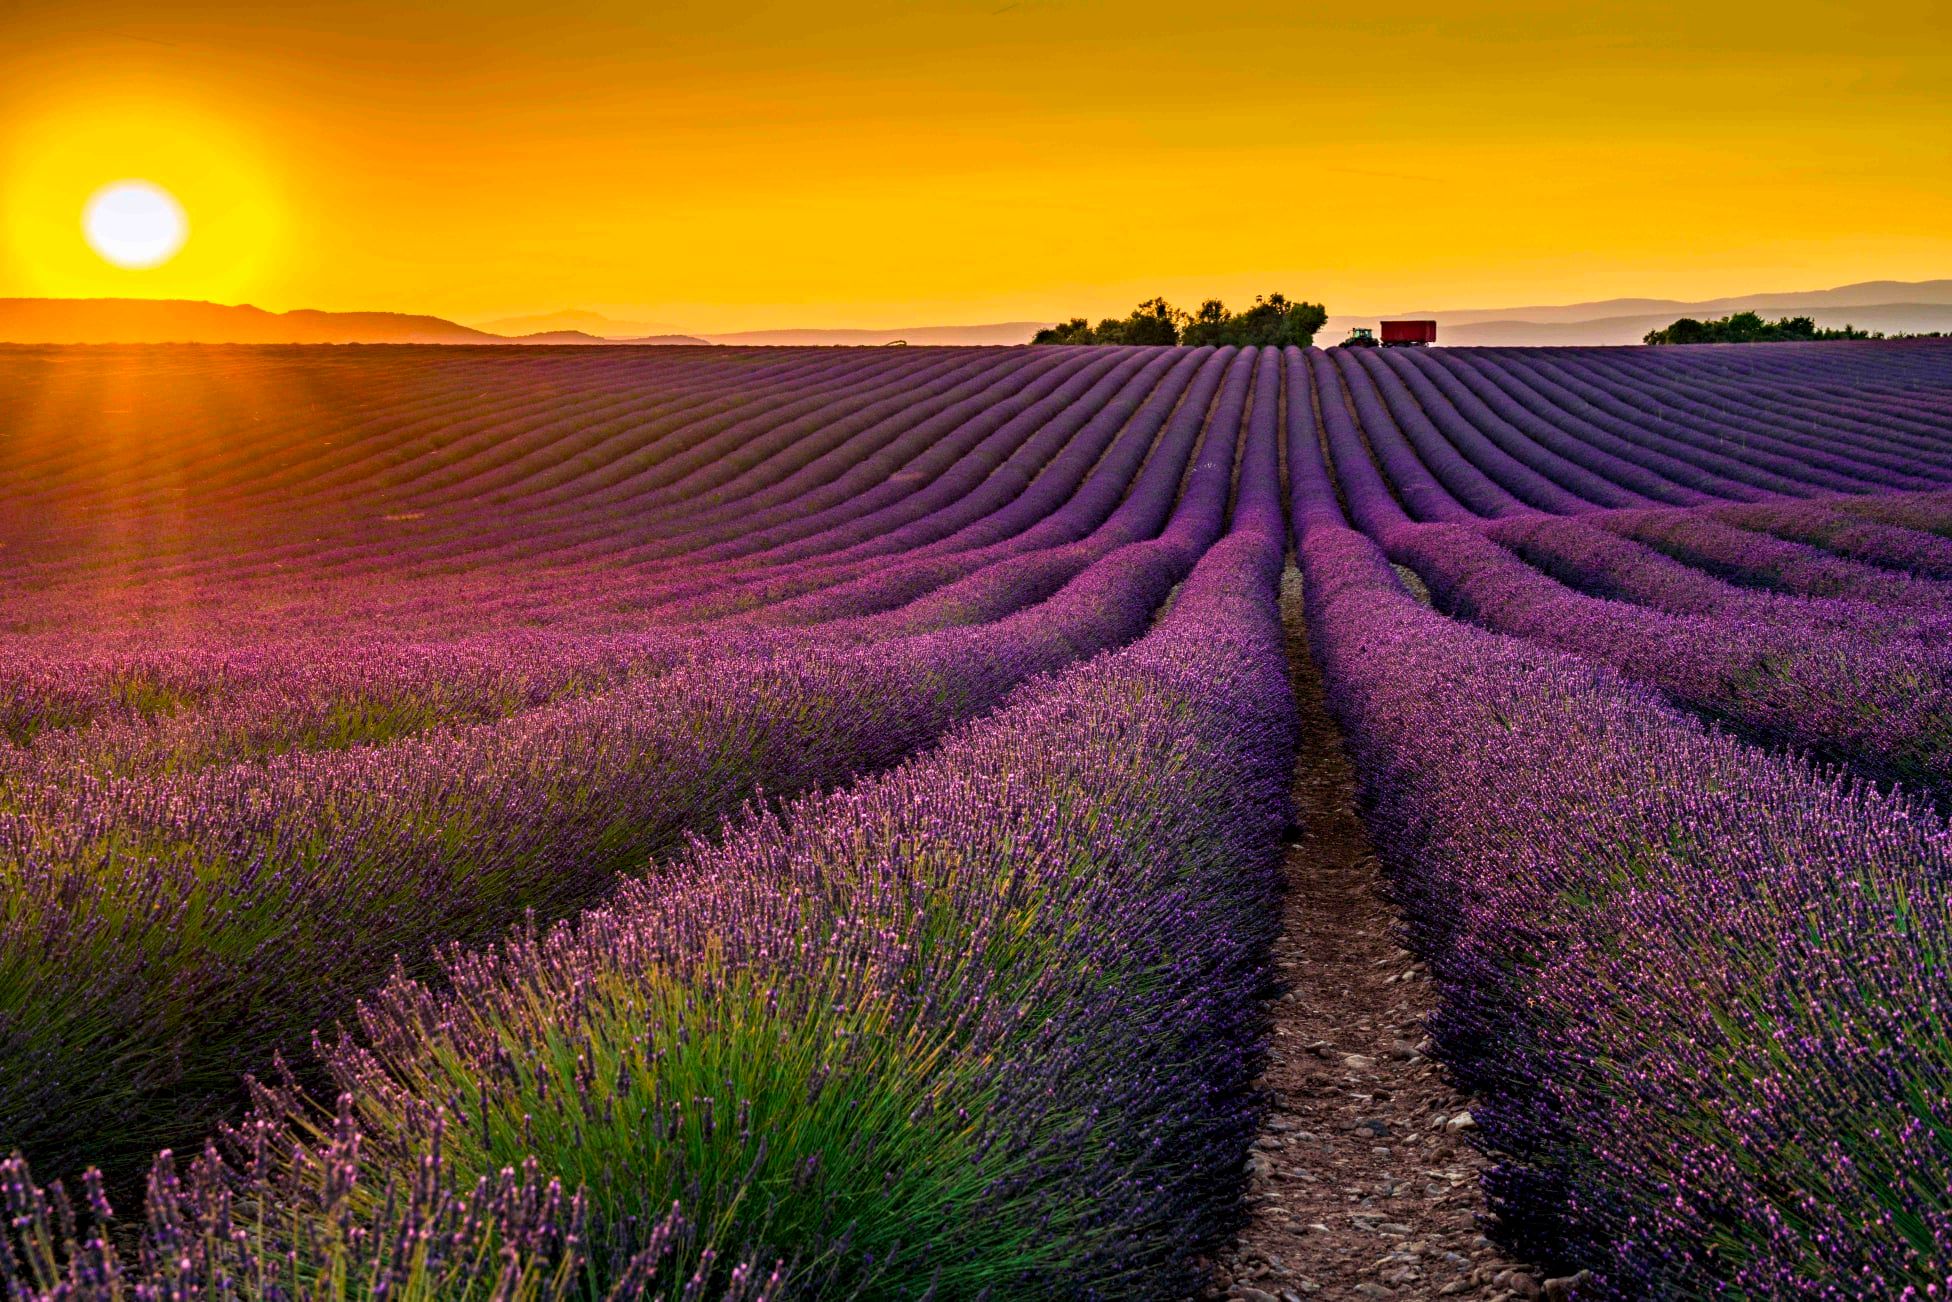 Hình ảnh cánh đồng hoa lavender tím được chụp bởi những người đam mê làm đẹp tự nhiên sẽ chinh phục bạn bằng sự lãng mạn và kiêu sa của chúng. Những bông hoa tím rực rỡ tạo ra một cảm giác ngọt ngào nơi bạn đứng.